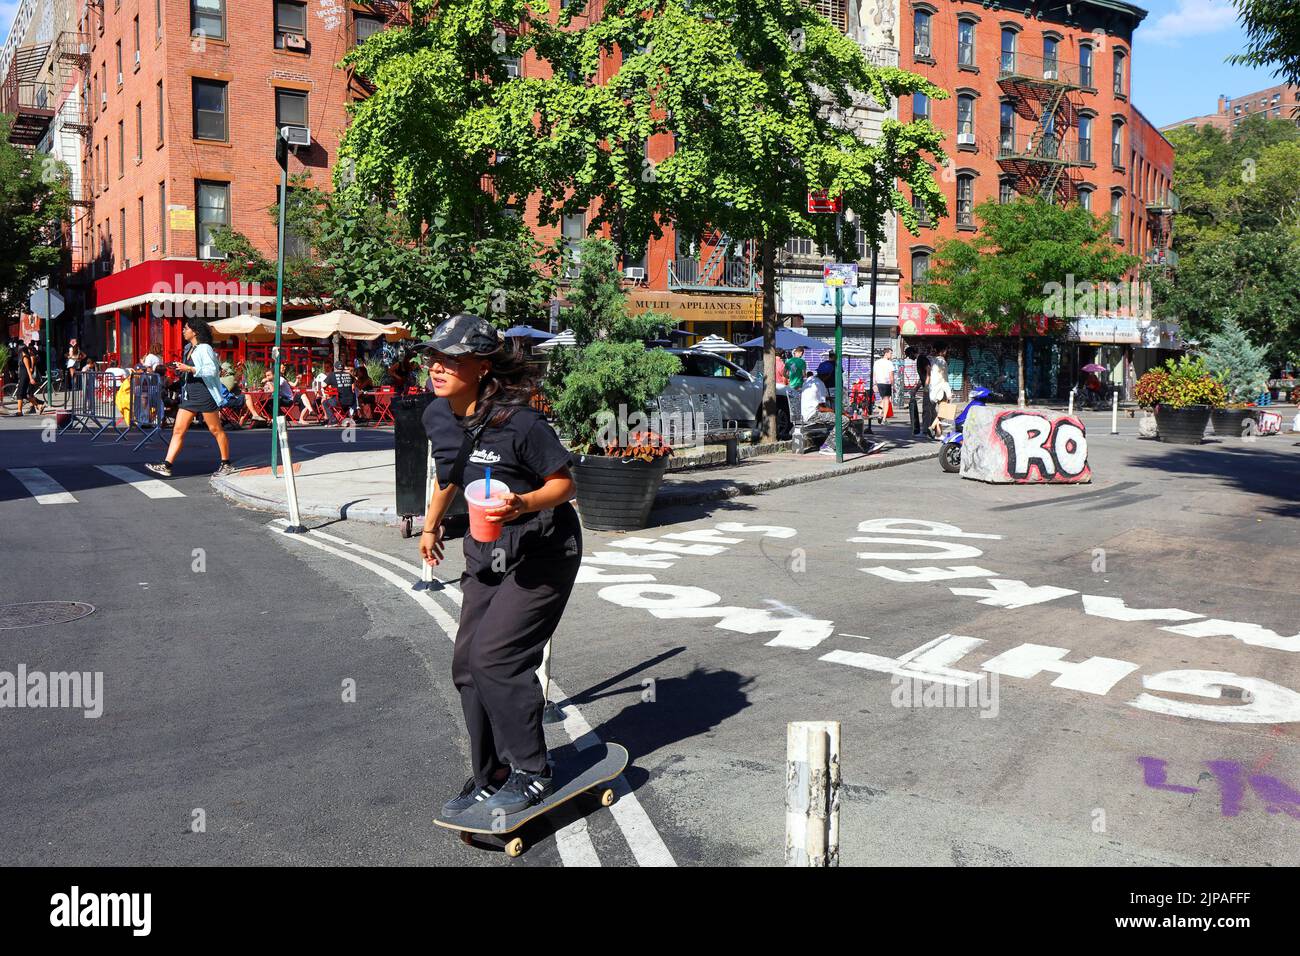 Eine Skateboarderin mit einer quart-großen Wassermelone-Slushie fährt an einer NYC Greenstreet in Manhattans „Dimes Square“ Chinatown/Lower East Side vorbei Stockfoto